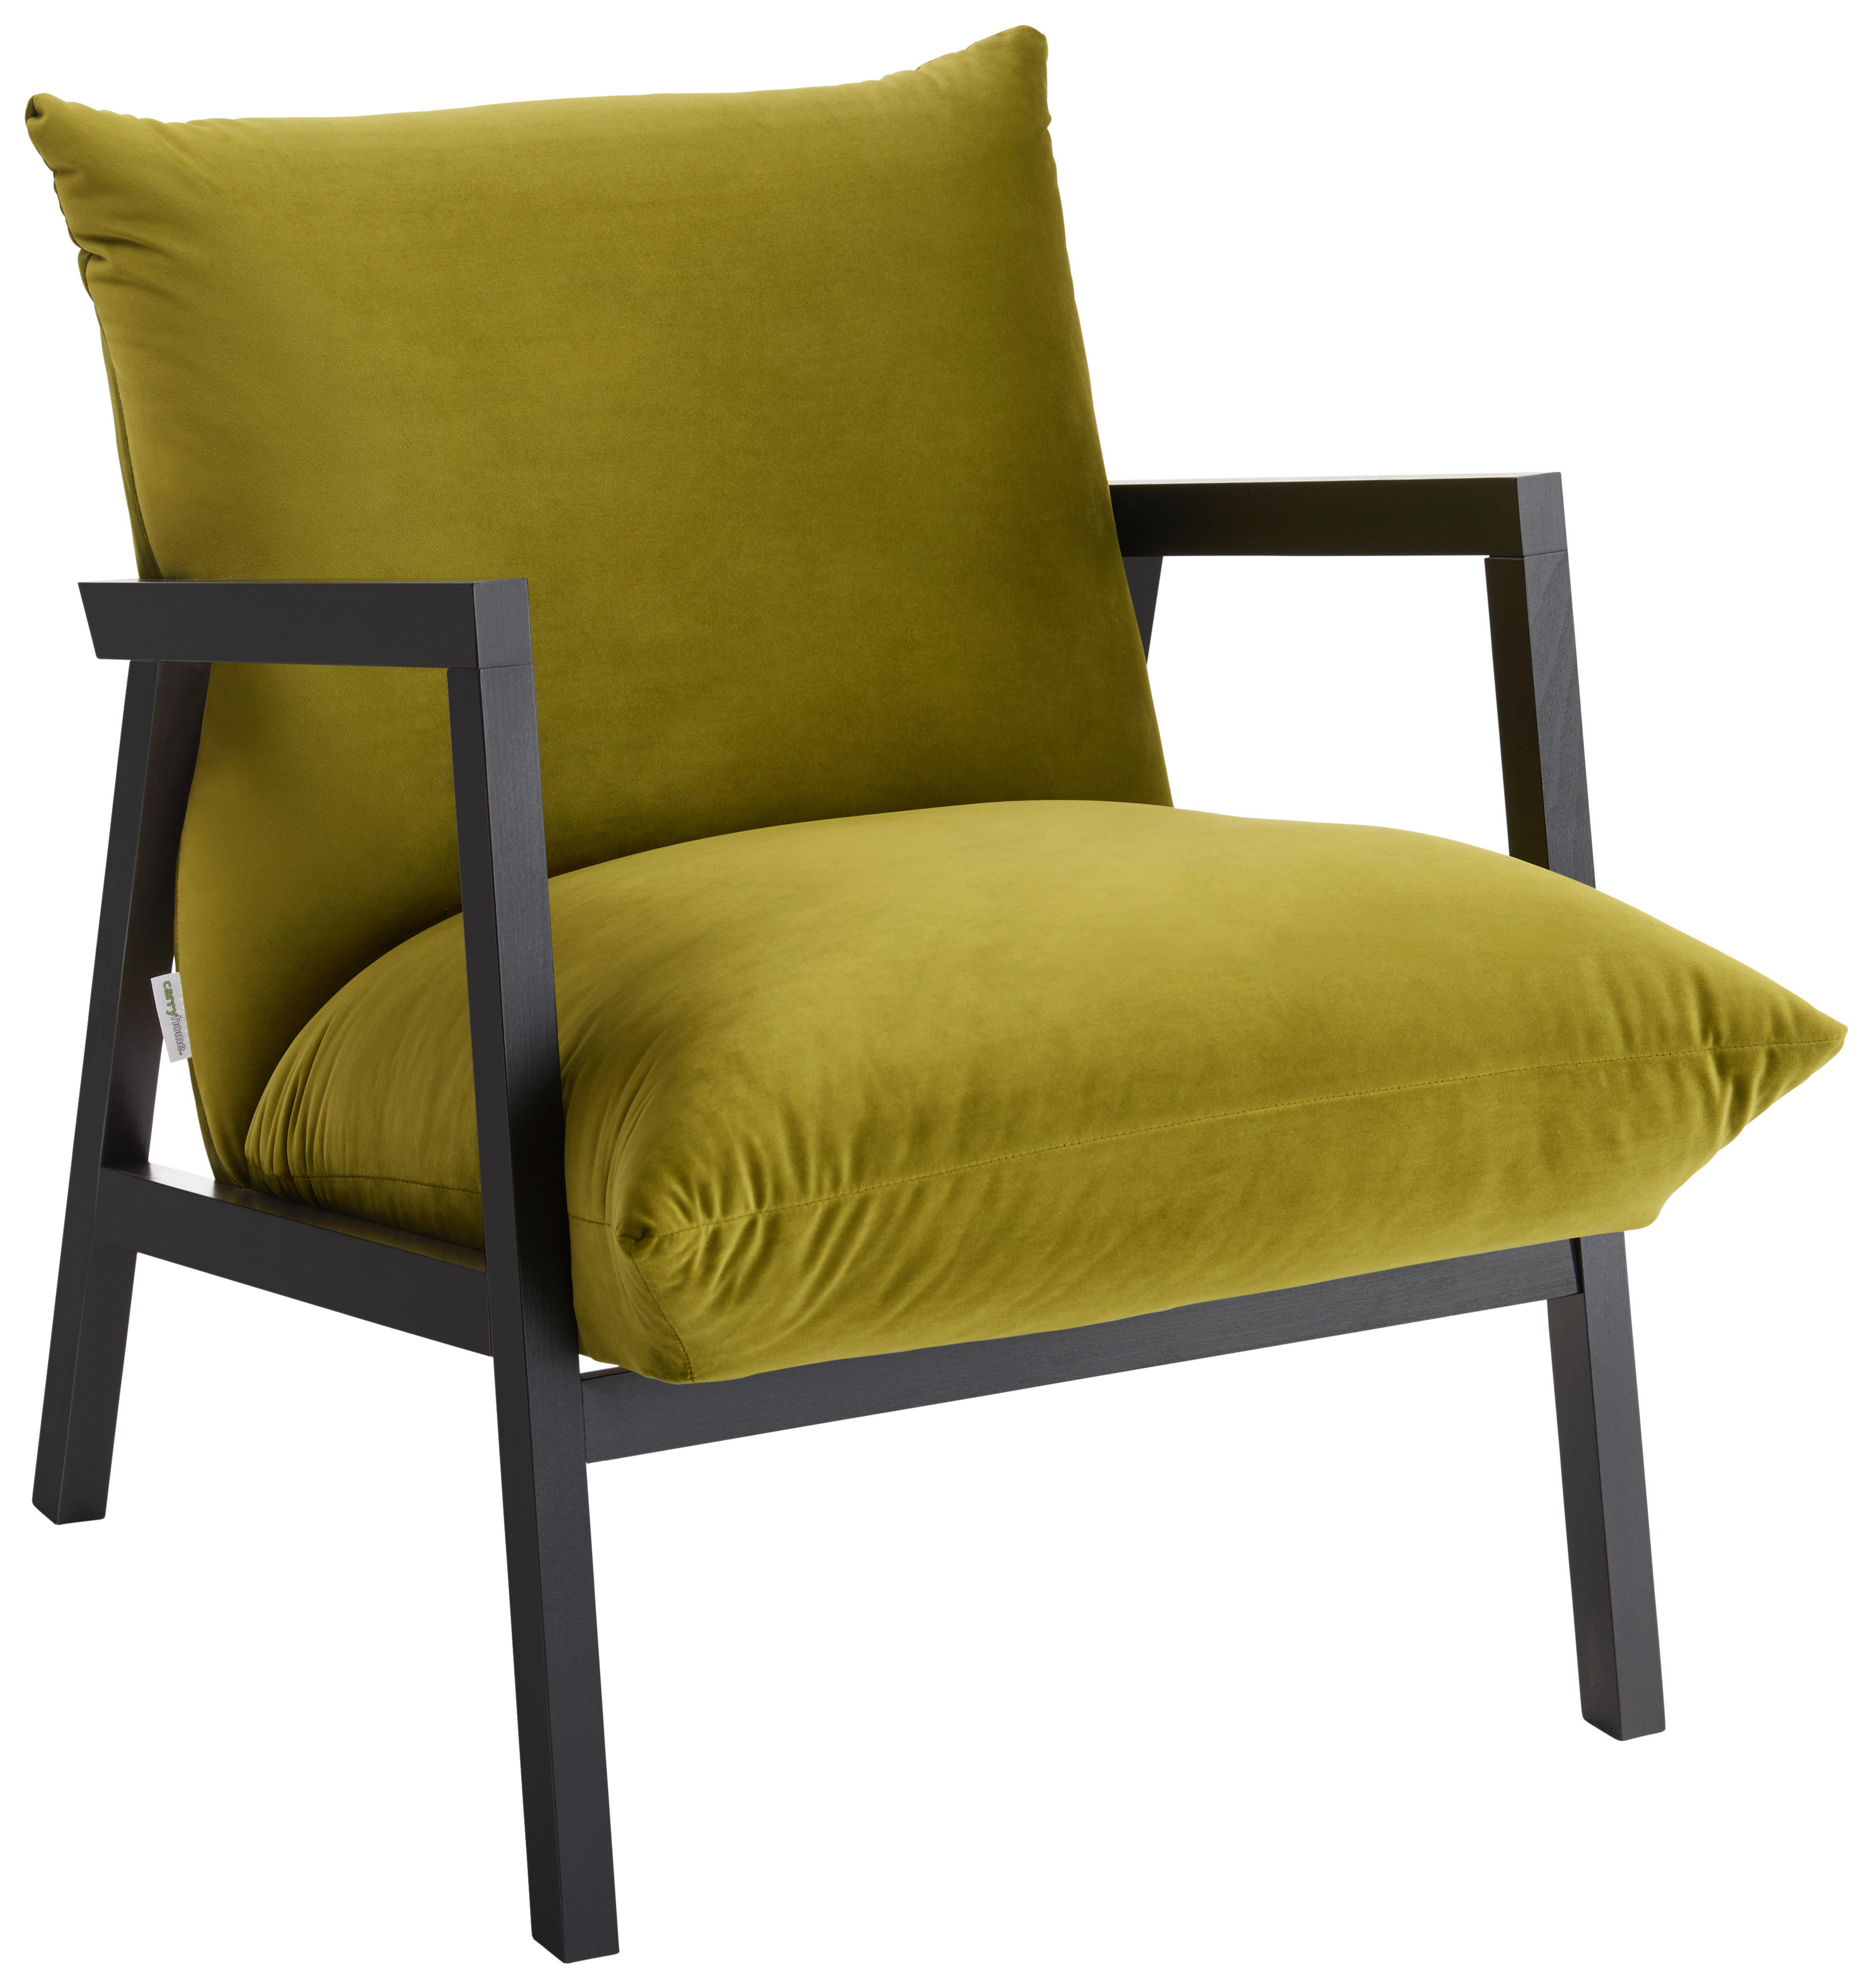 KRESLO, textil, zelená - farby wenge/zelená, Design, drevo/textil (63/76/80cm) - Carryhome